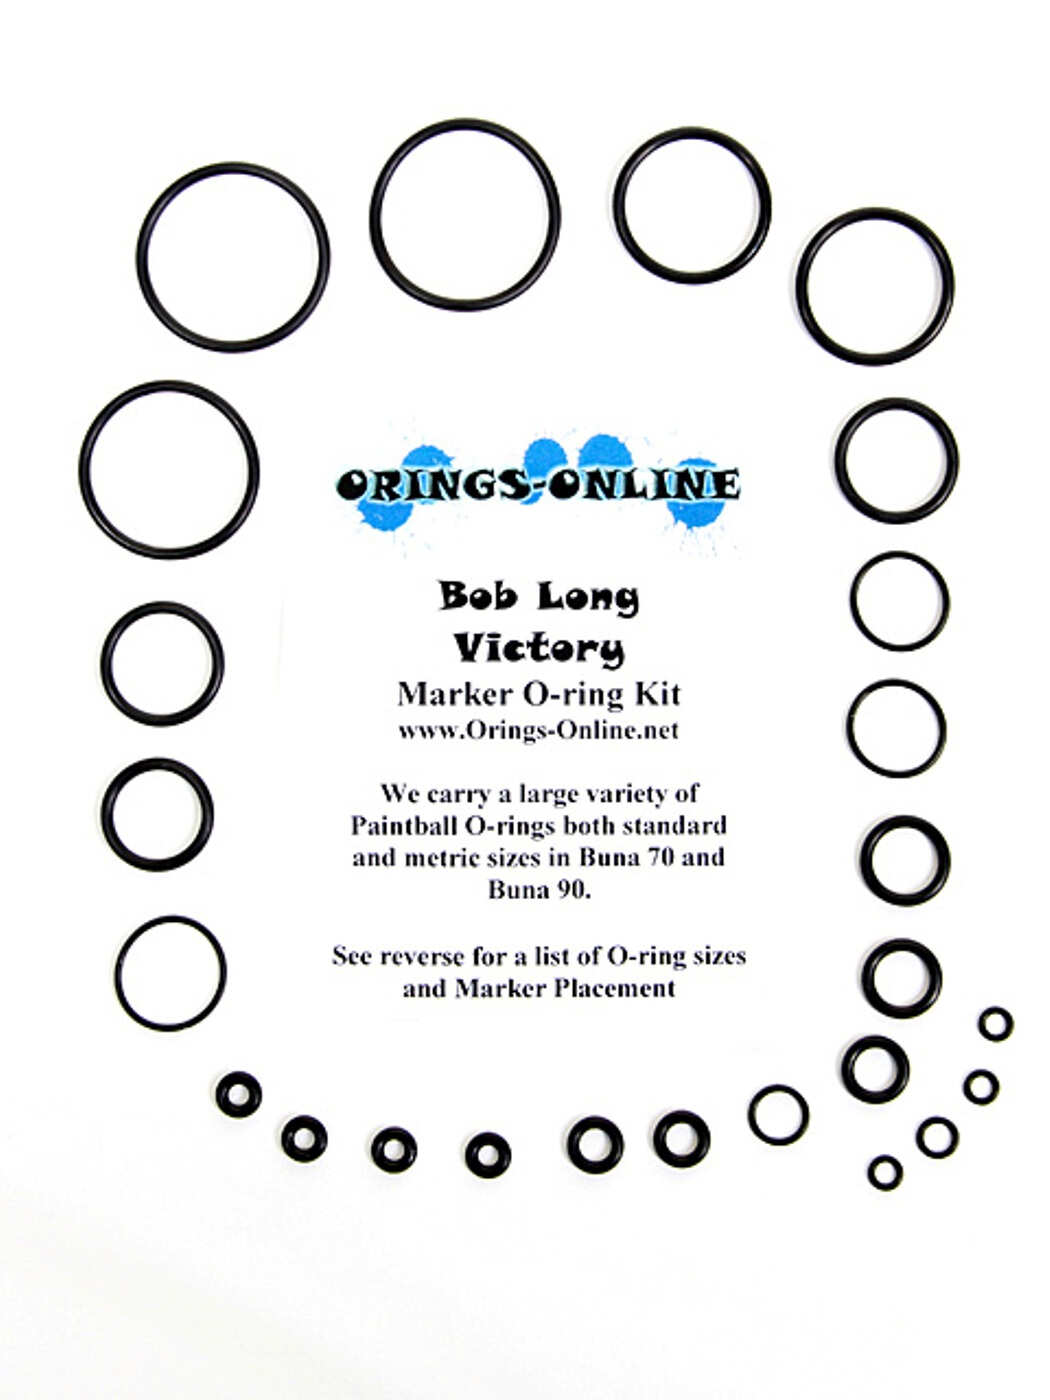 Bob Long Victory Marker O-ring Kit